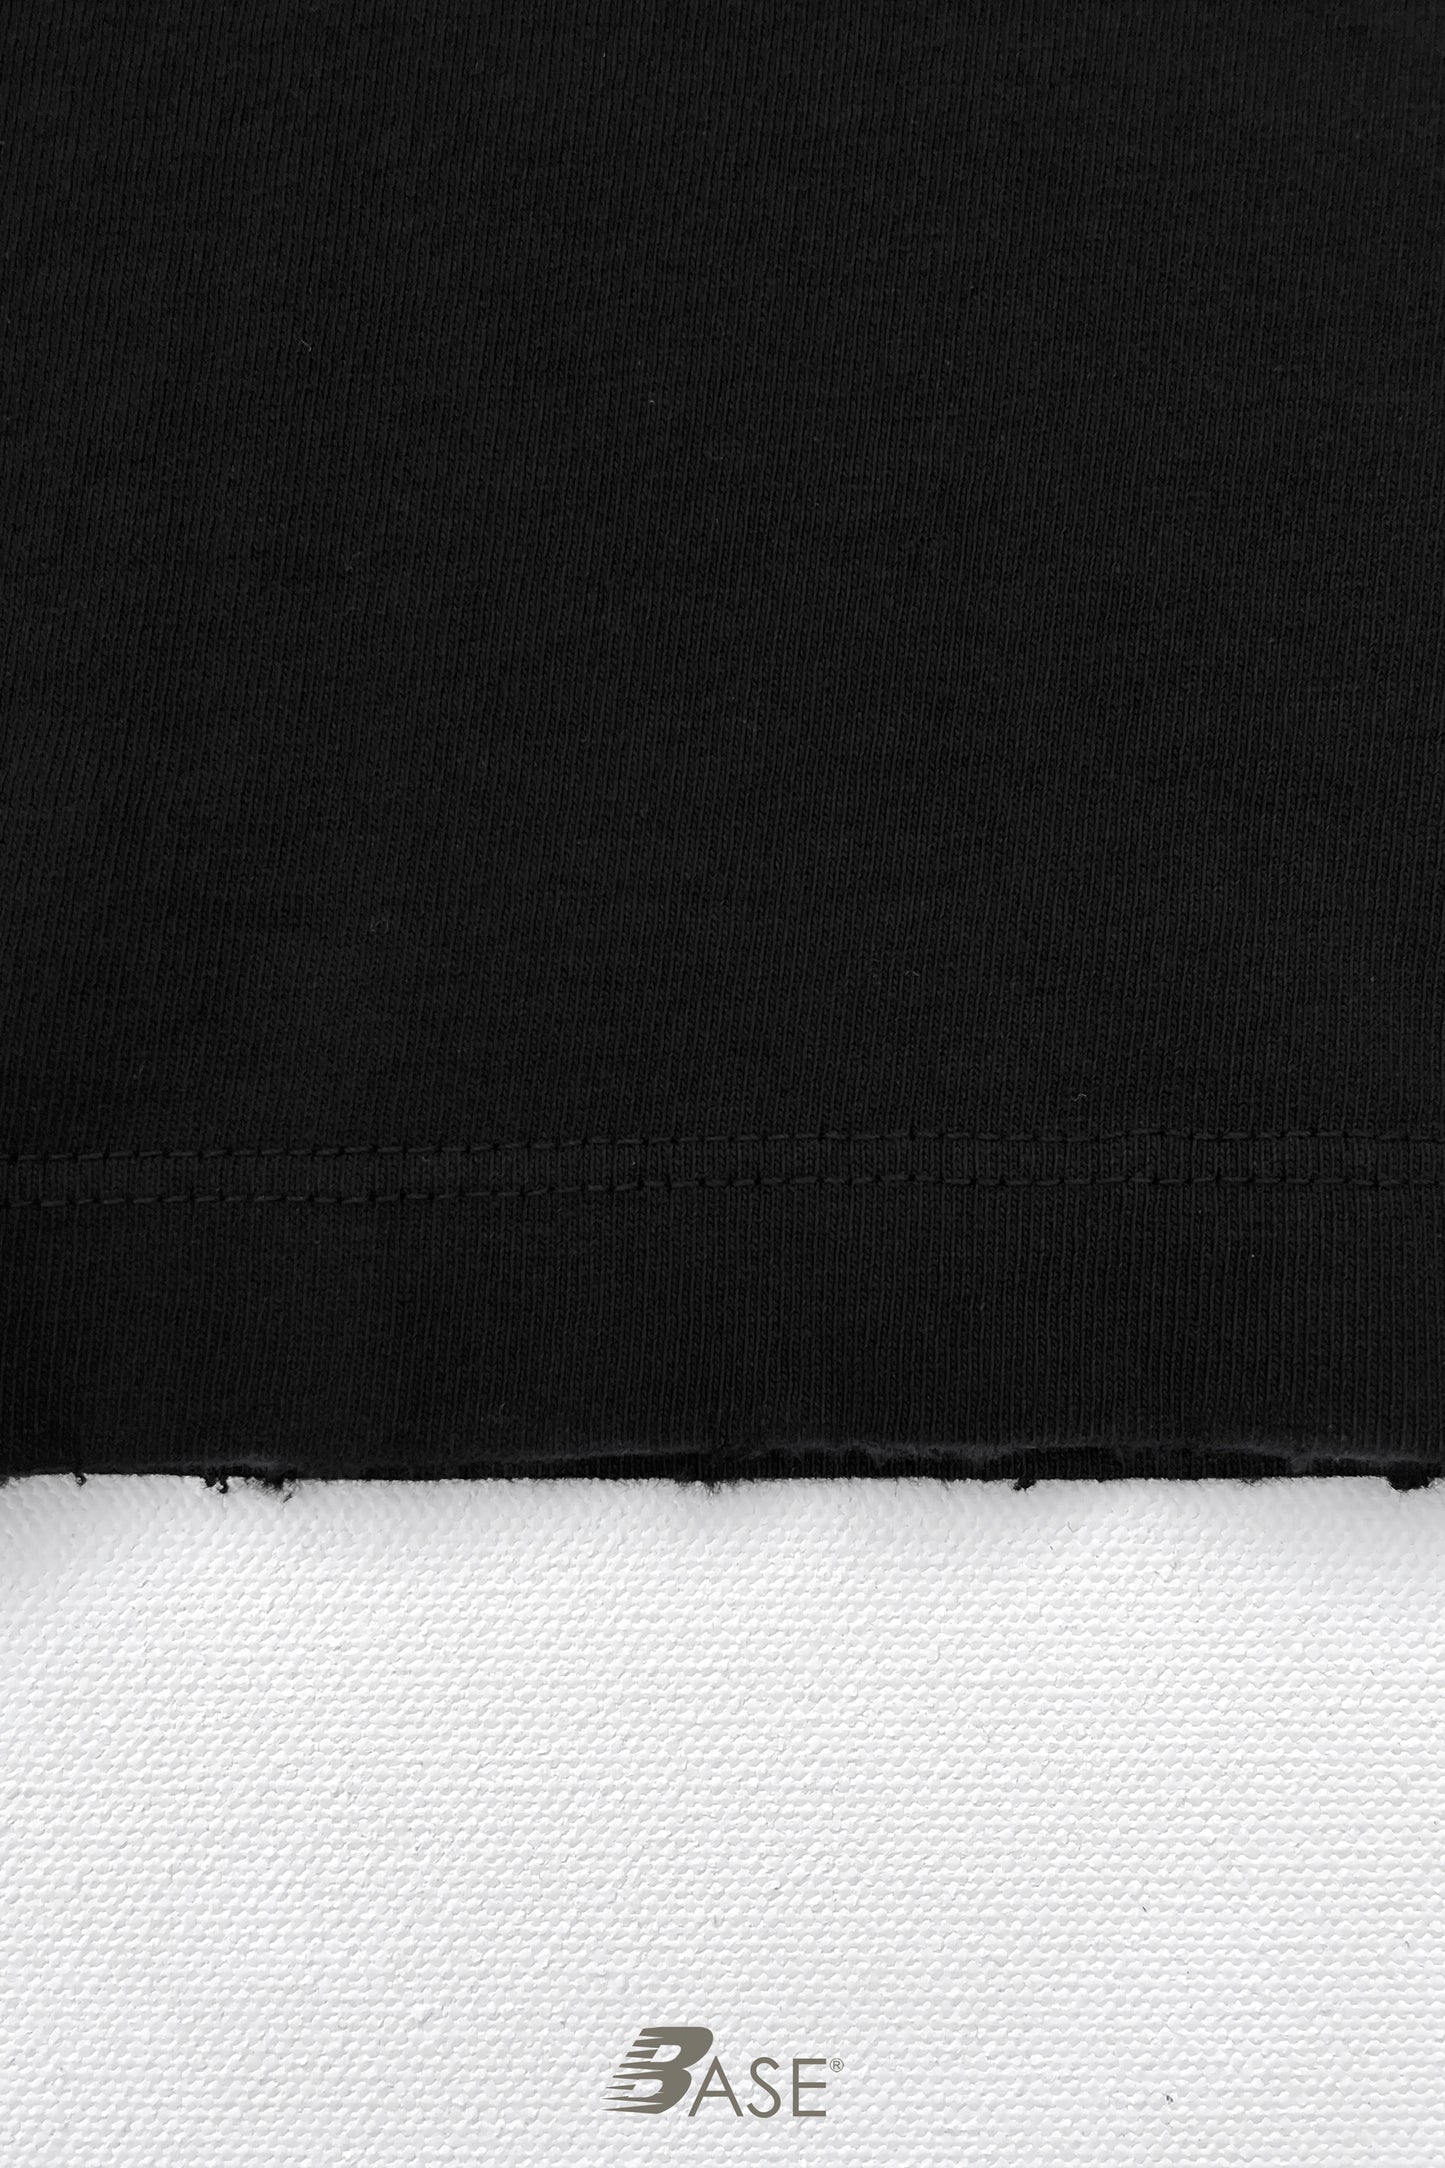 Sixelar BASE Black T-Shirt blank hem detail.